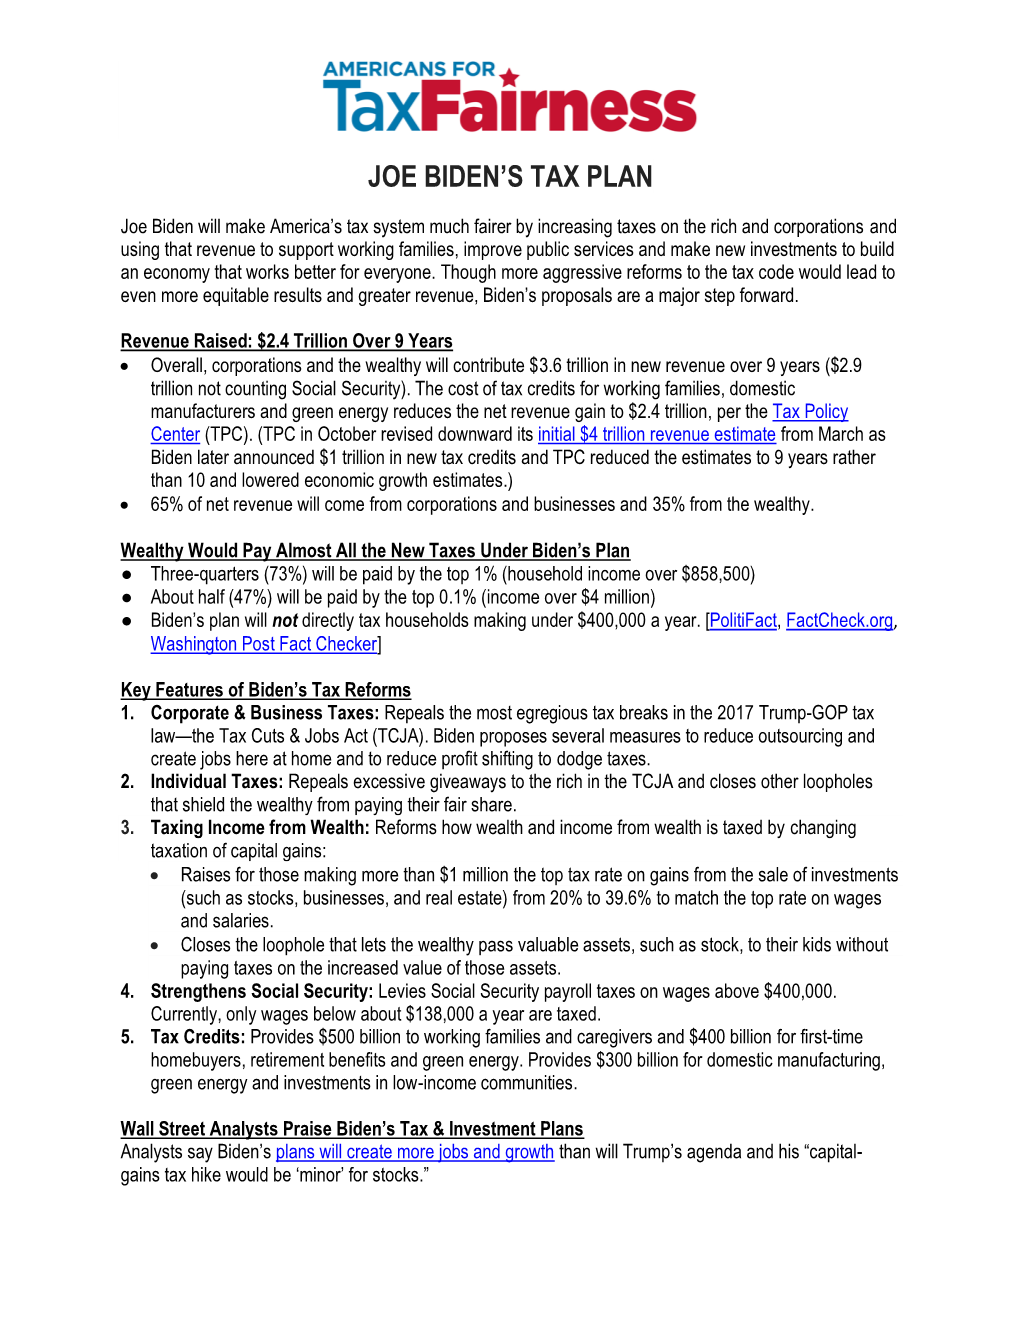 Joe Biden's Tax Plan